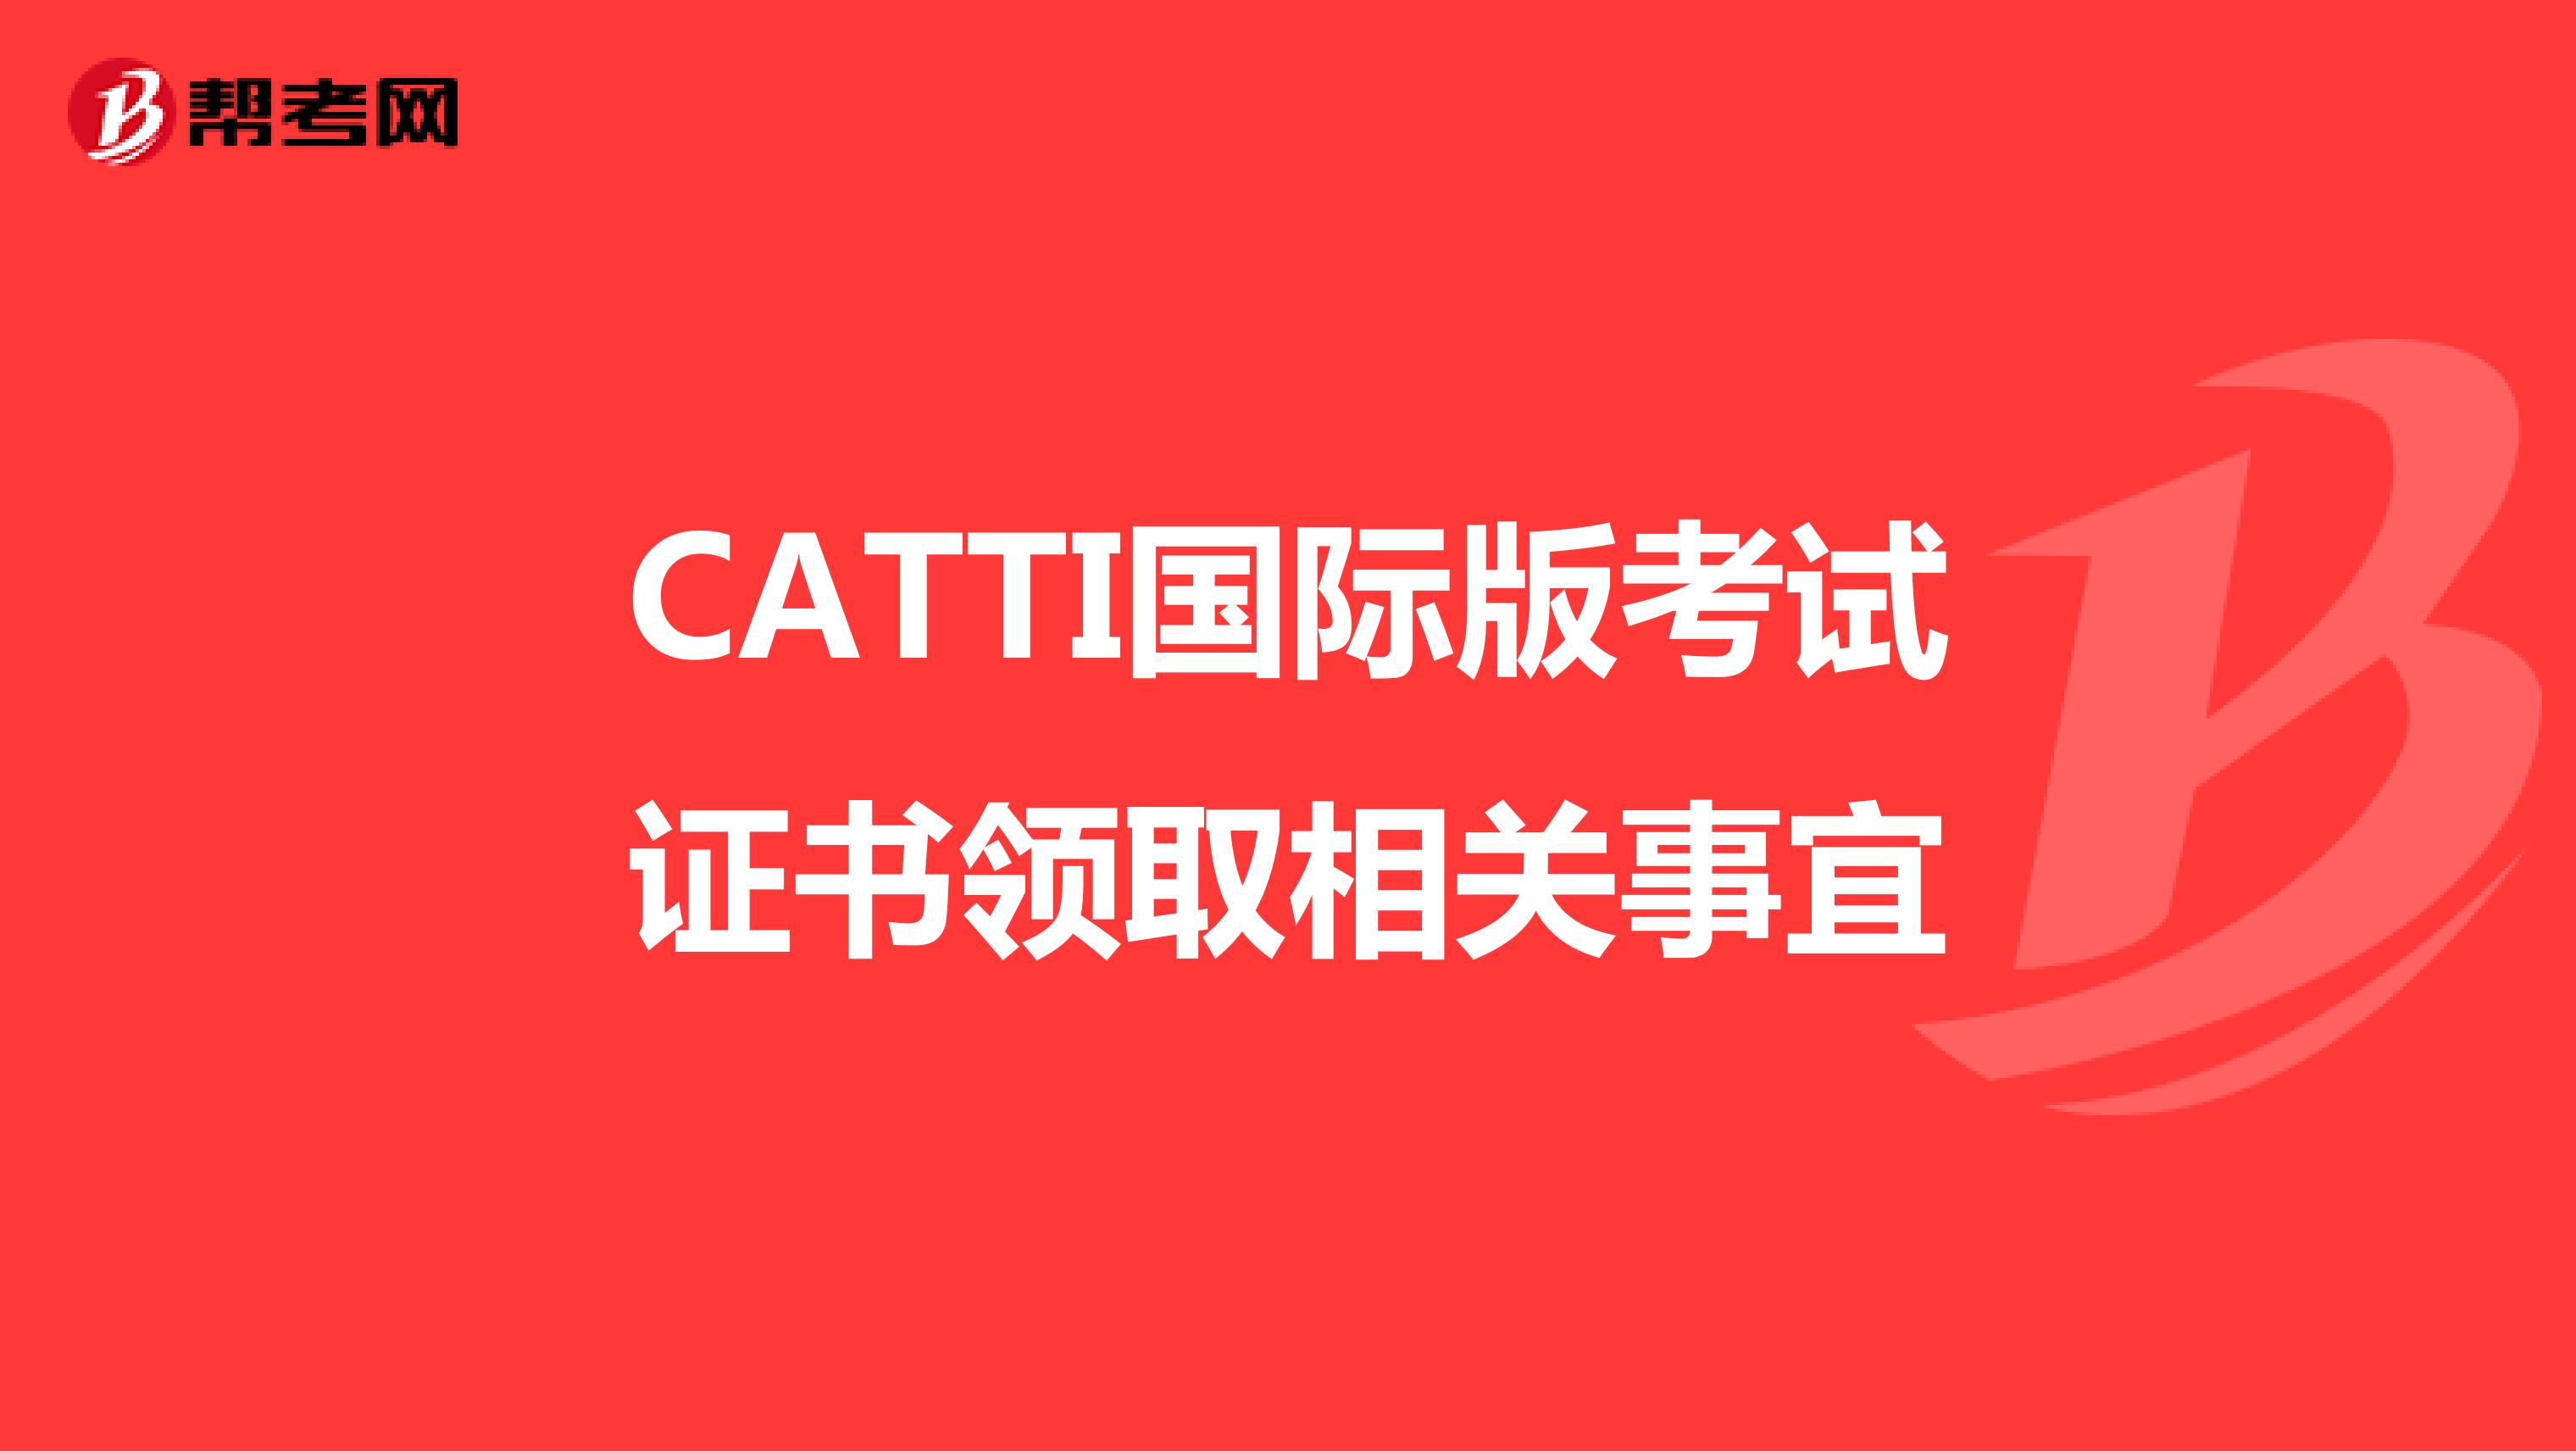 CATTI国际版考试证书领取相关事宜